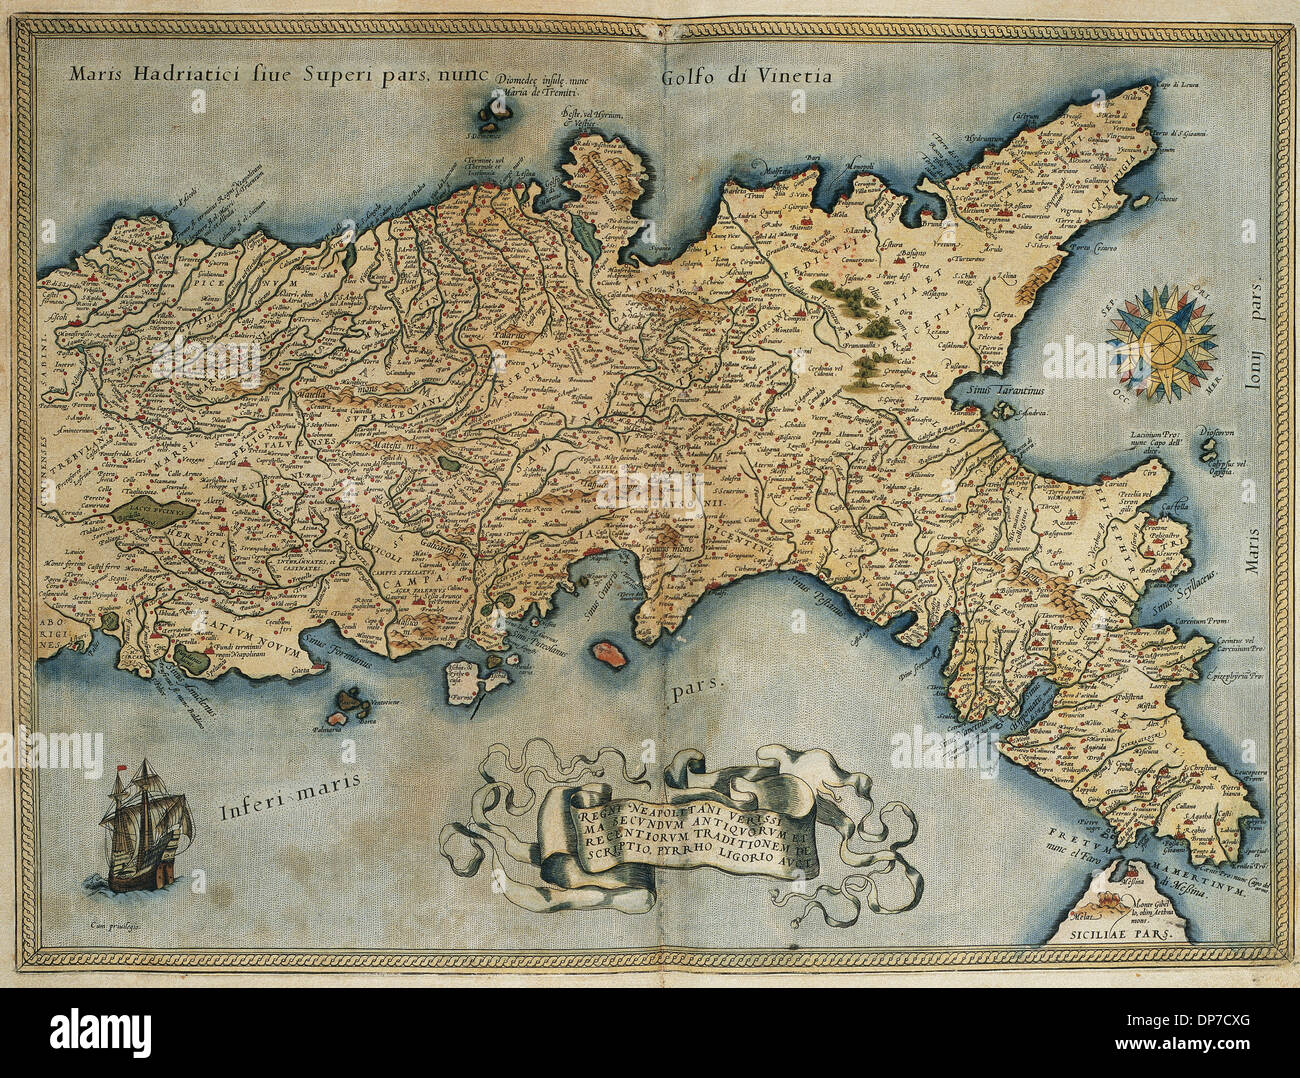 Karte von Königreich von Neapel. Theatrum Orbis Terrarum von Abraham Ortelius (1527-1598). Erste Ausgabe. Antwerpen, 1574. Stockfoto